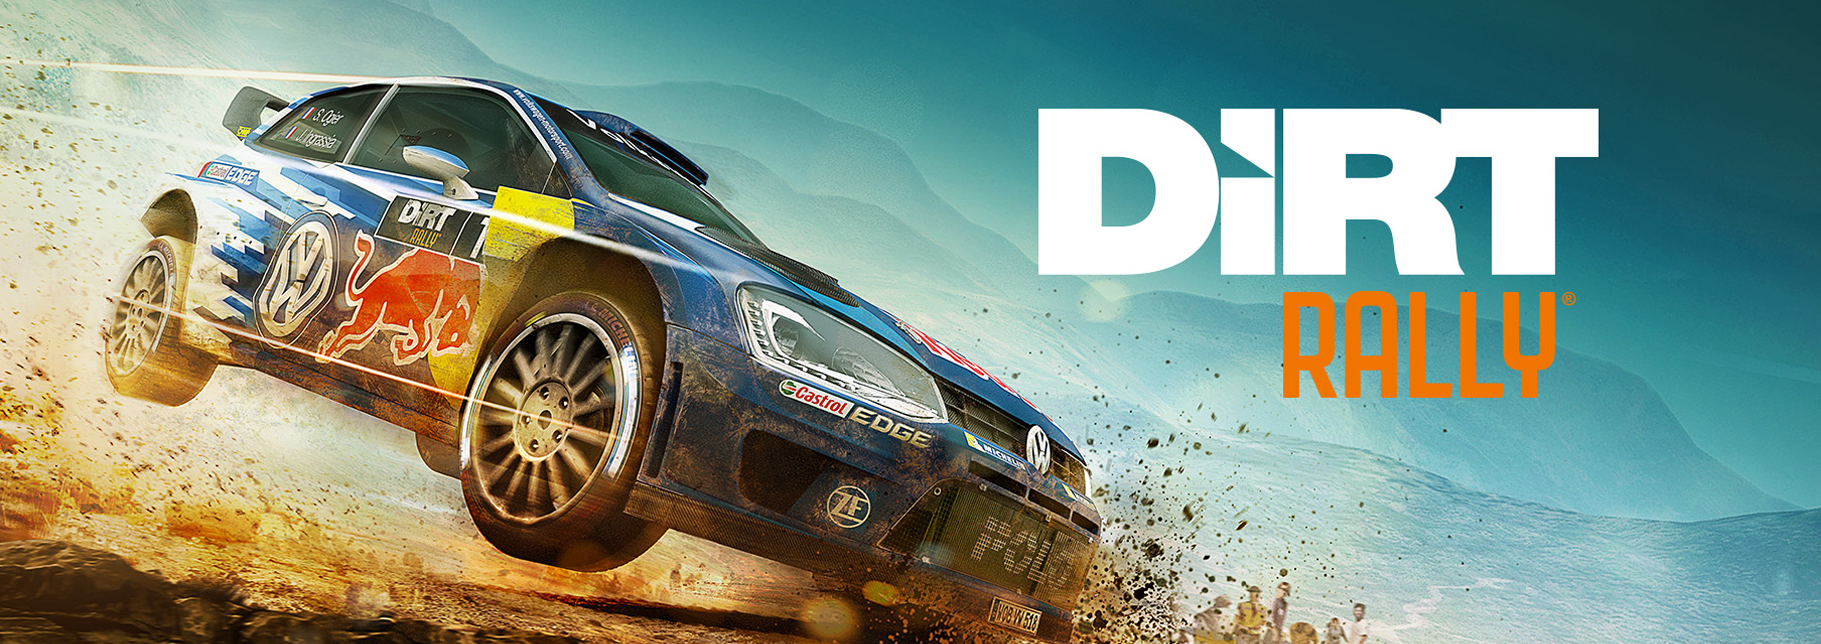 Dirt vr. Dirt Rally VR. Плейстейшен ралли. CARX Rally VR. Dirt Rally VR Gameplay.